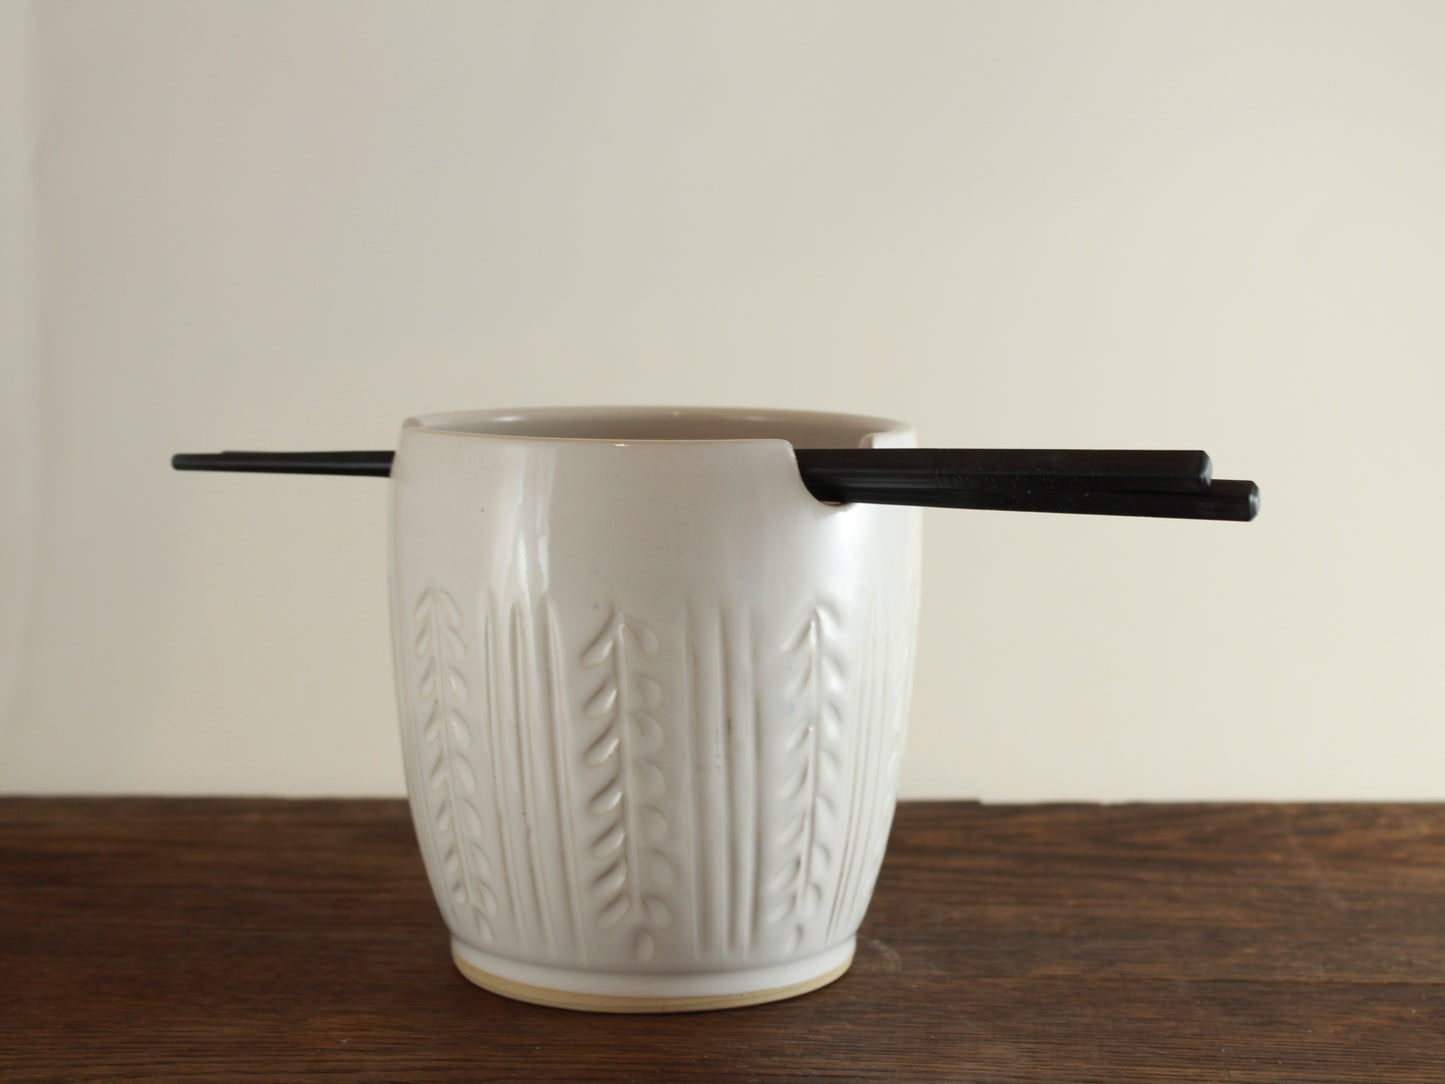 Handmade Ramen bowl